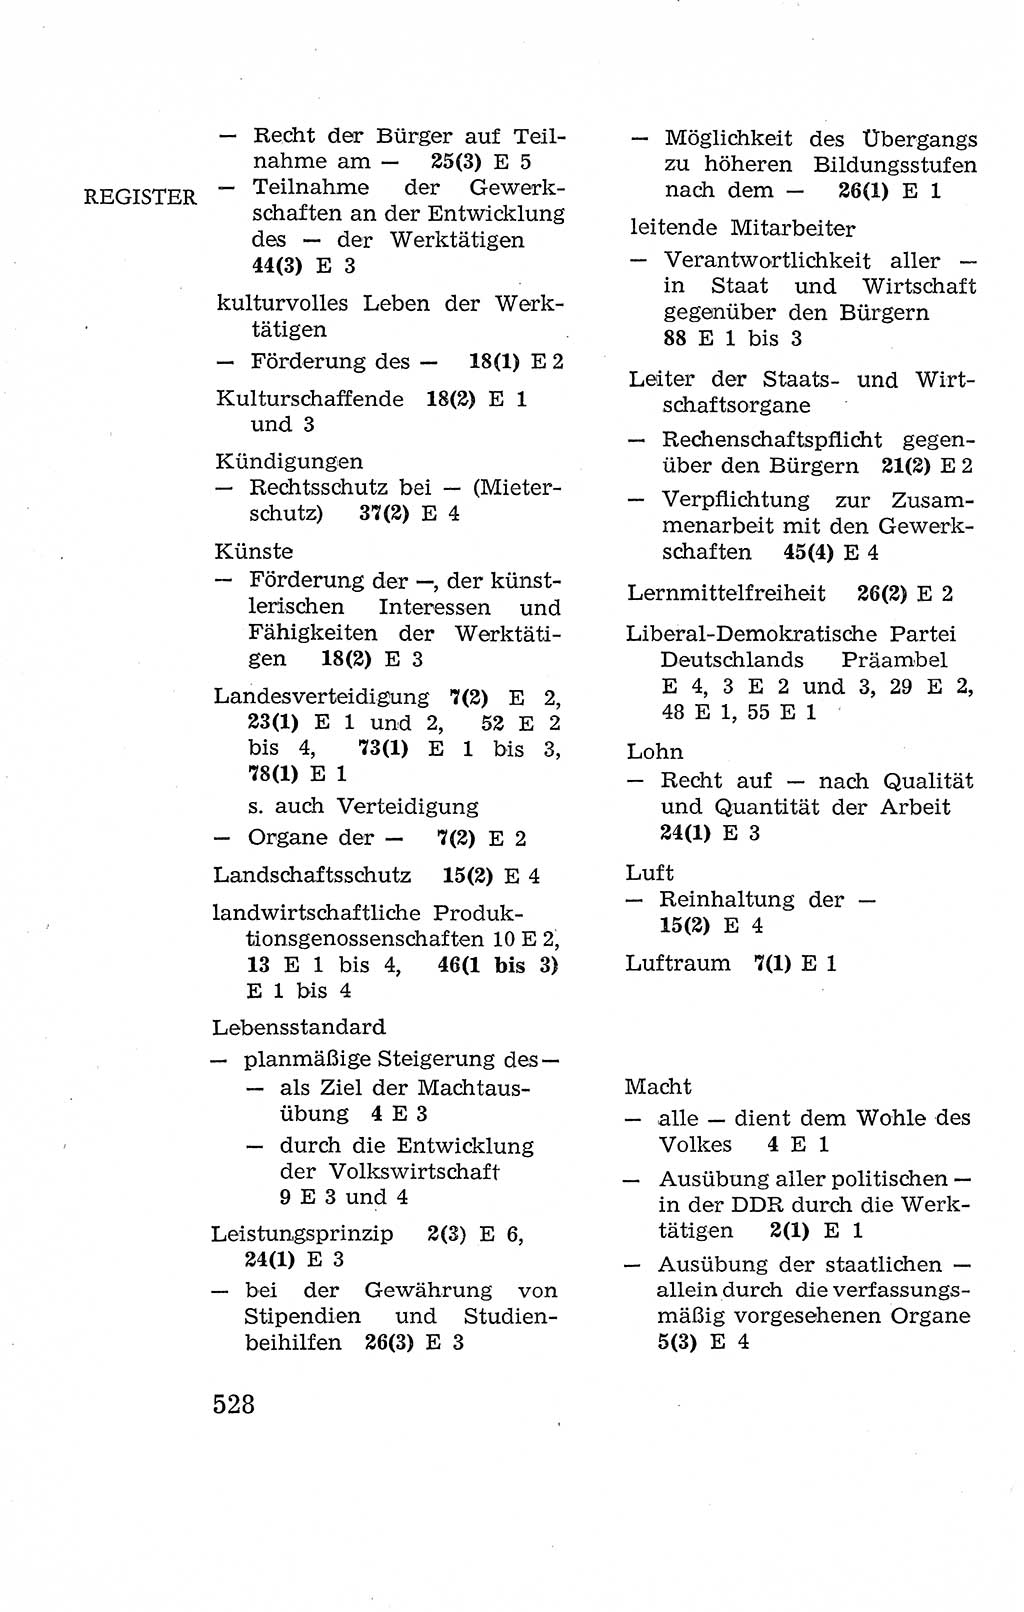 Verfassung der Deutschen Demokratischen Republik (DDR), Dokumente, Kommentar 1969, Band 2, Seite 528 (Verf. DDR Dok. Komm. 1969, Bd. 2, S. 528)